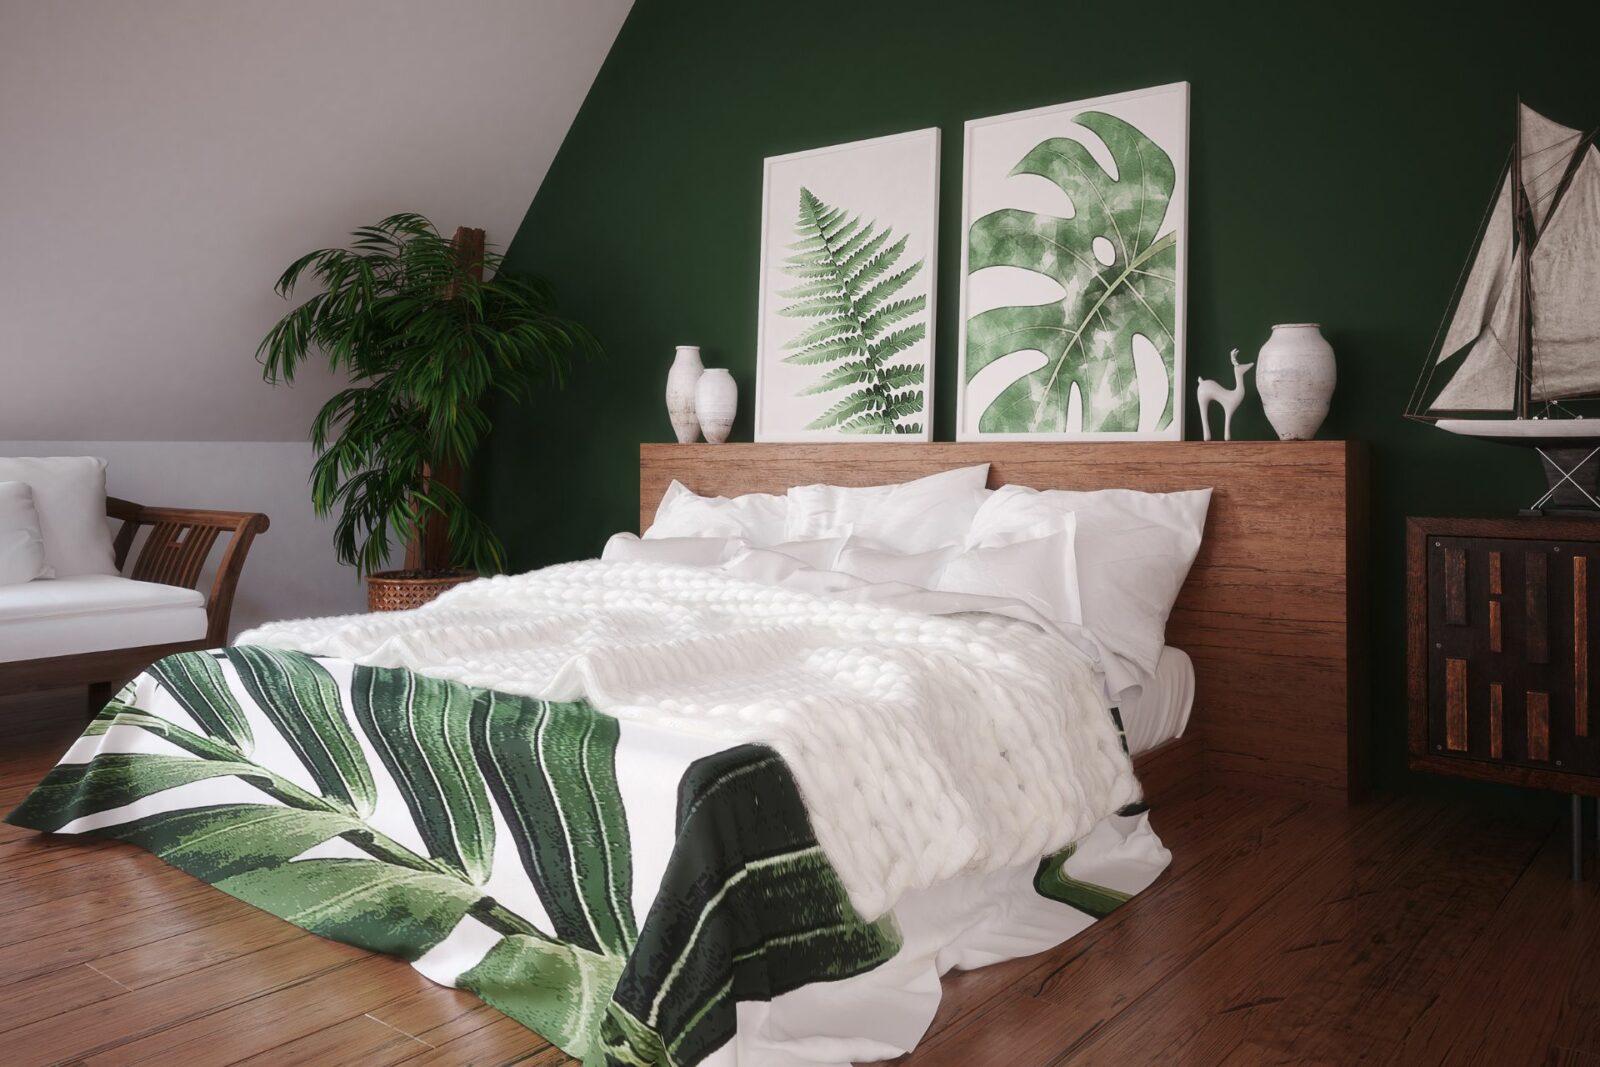 best green bedroom design ideas